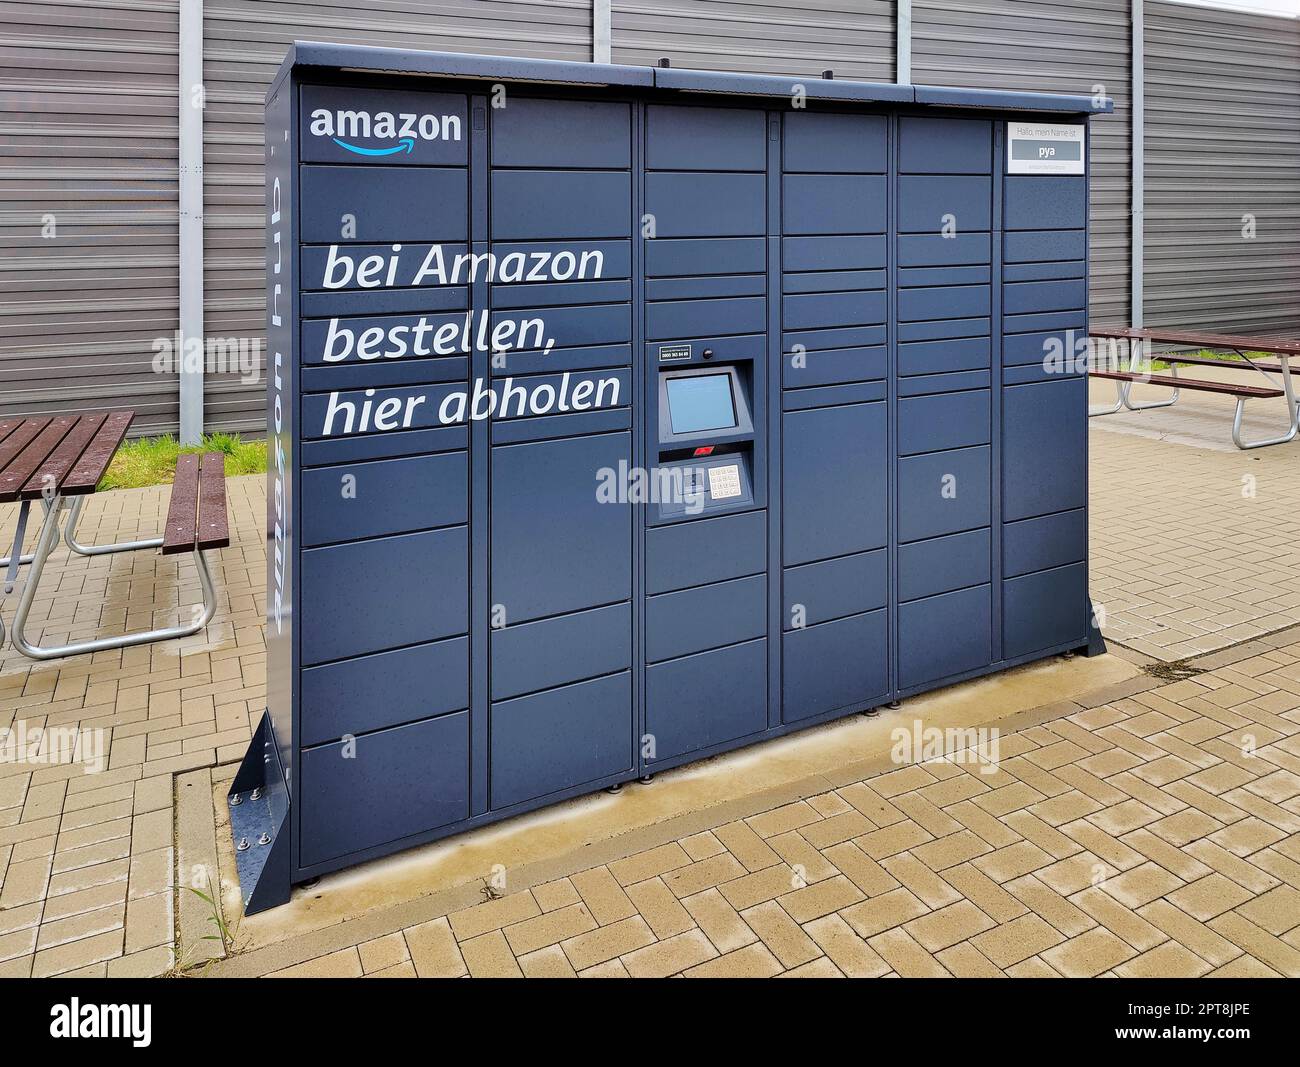 Amazon locker im Amazon Sorting Center DTM9, Abholstation, Witten,  Ruhrgebiet, Nordrhein-Westfalen, Deutschland Stockfotografie - Alamy